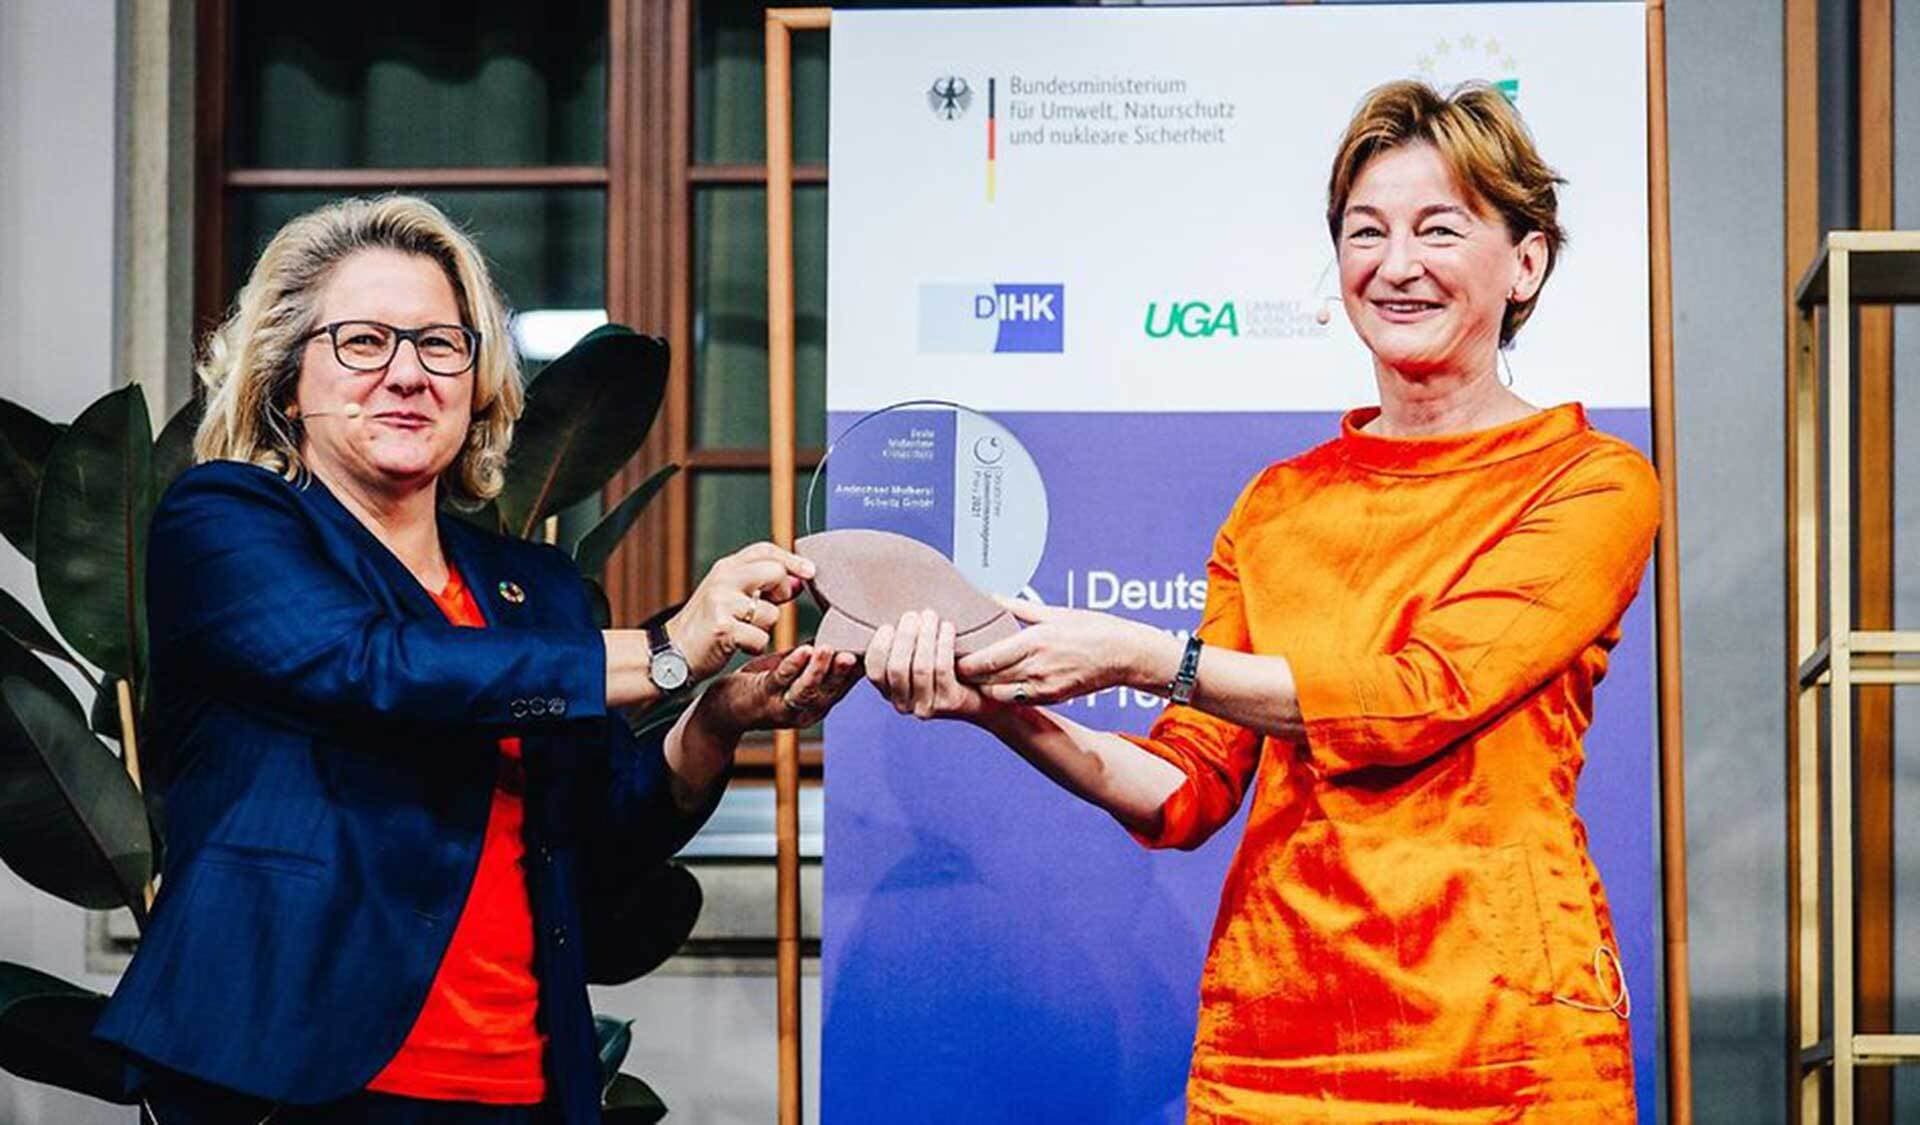 Bundesumweltministerin Schulze (links) hat erstmals den Deutschen Umweltmanagement-Preis verliehen. Ausgezeichnet wurden fünf Unternehmen, darunter auch zwei aus der Bio-Branche. Barbara Scheitz (rechts) nahm den Preis für die Molkerei Andechser entgegen.